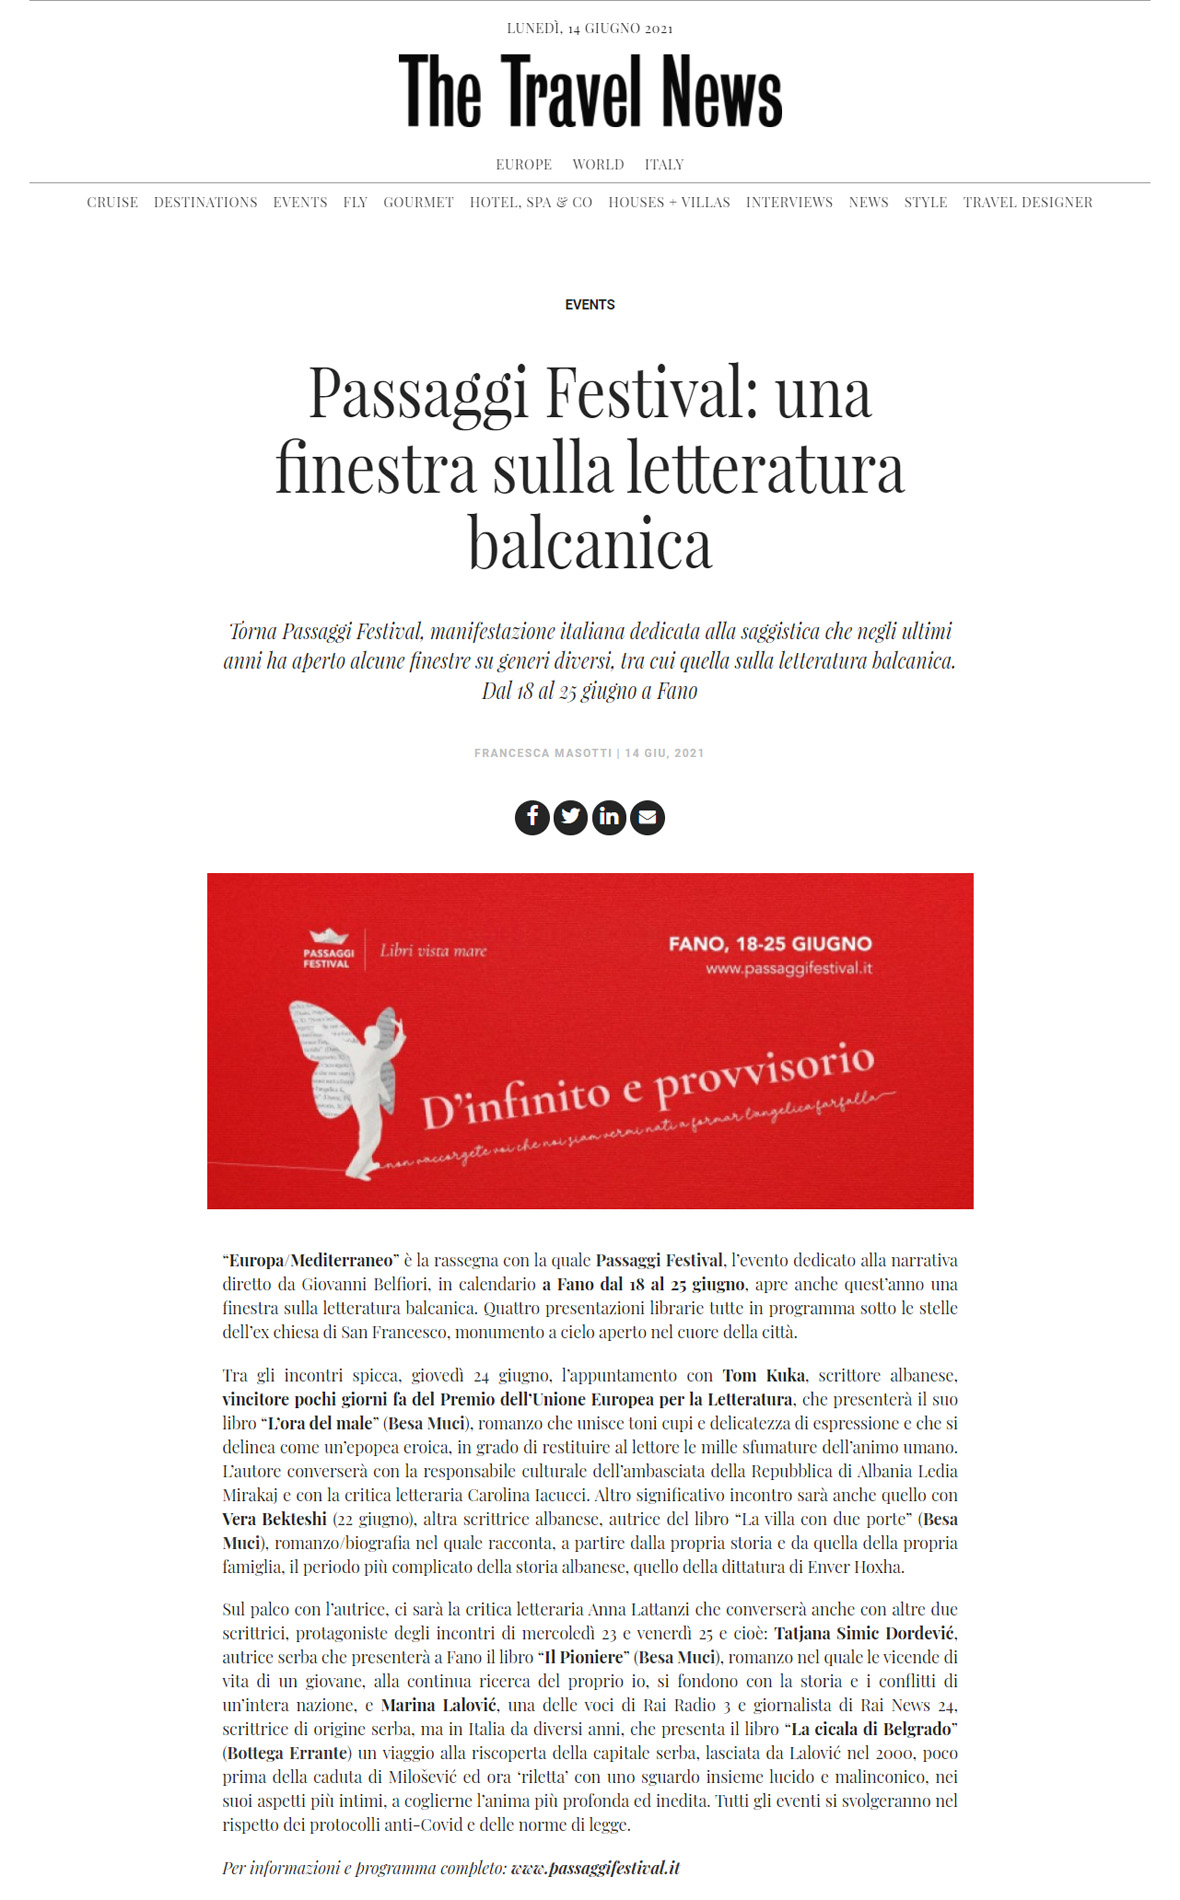 thetravelnews-it-passaggi-festival-una-finestra-sulla-letteratura-balcanica